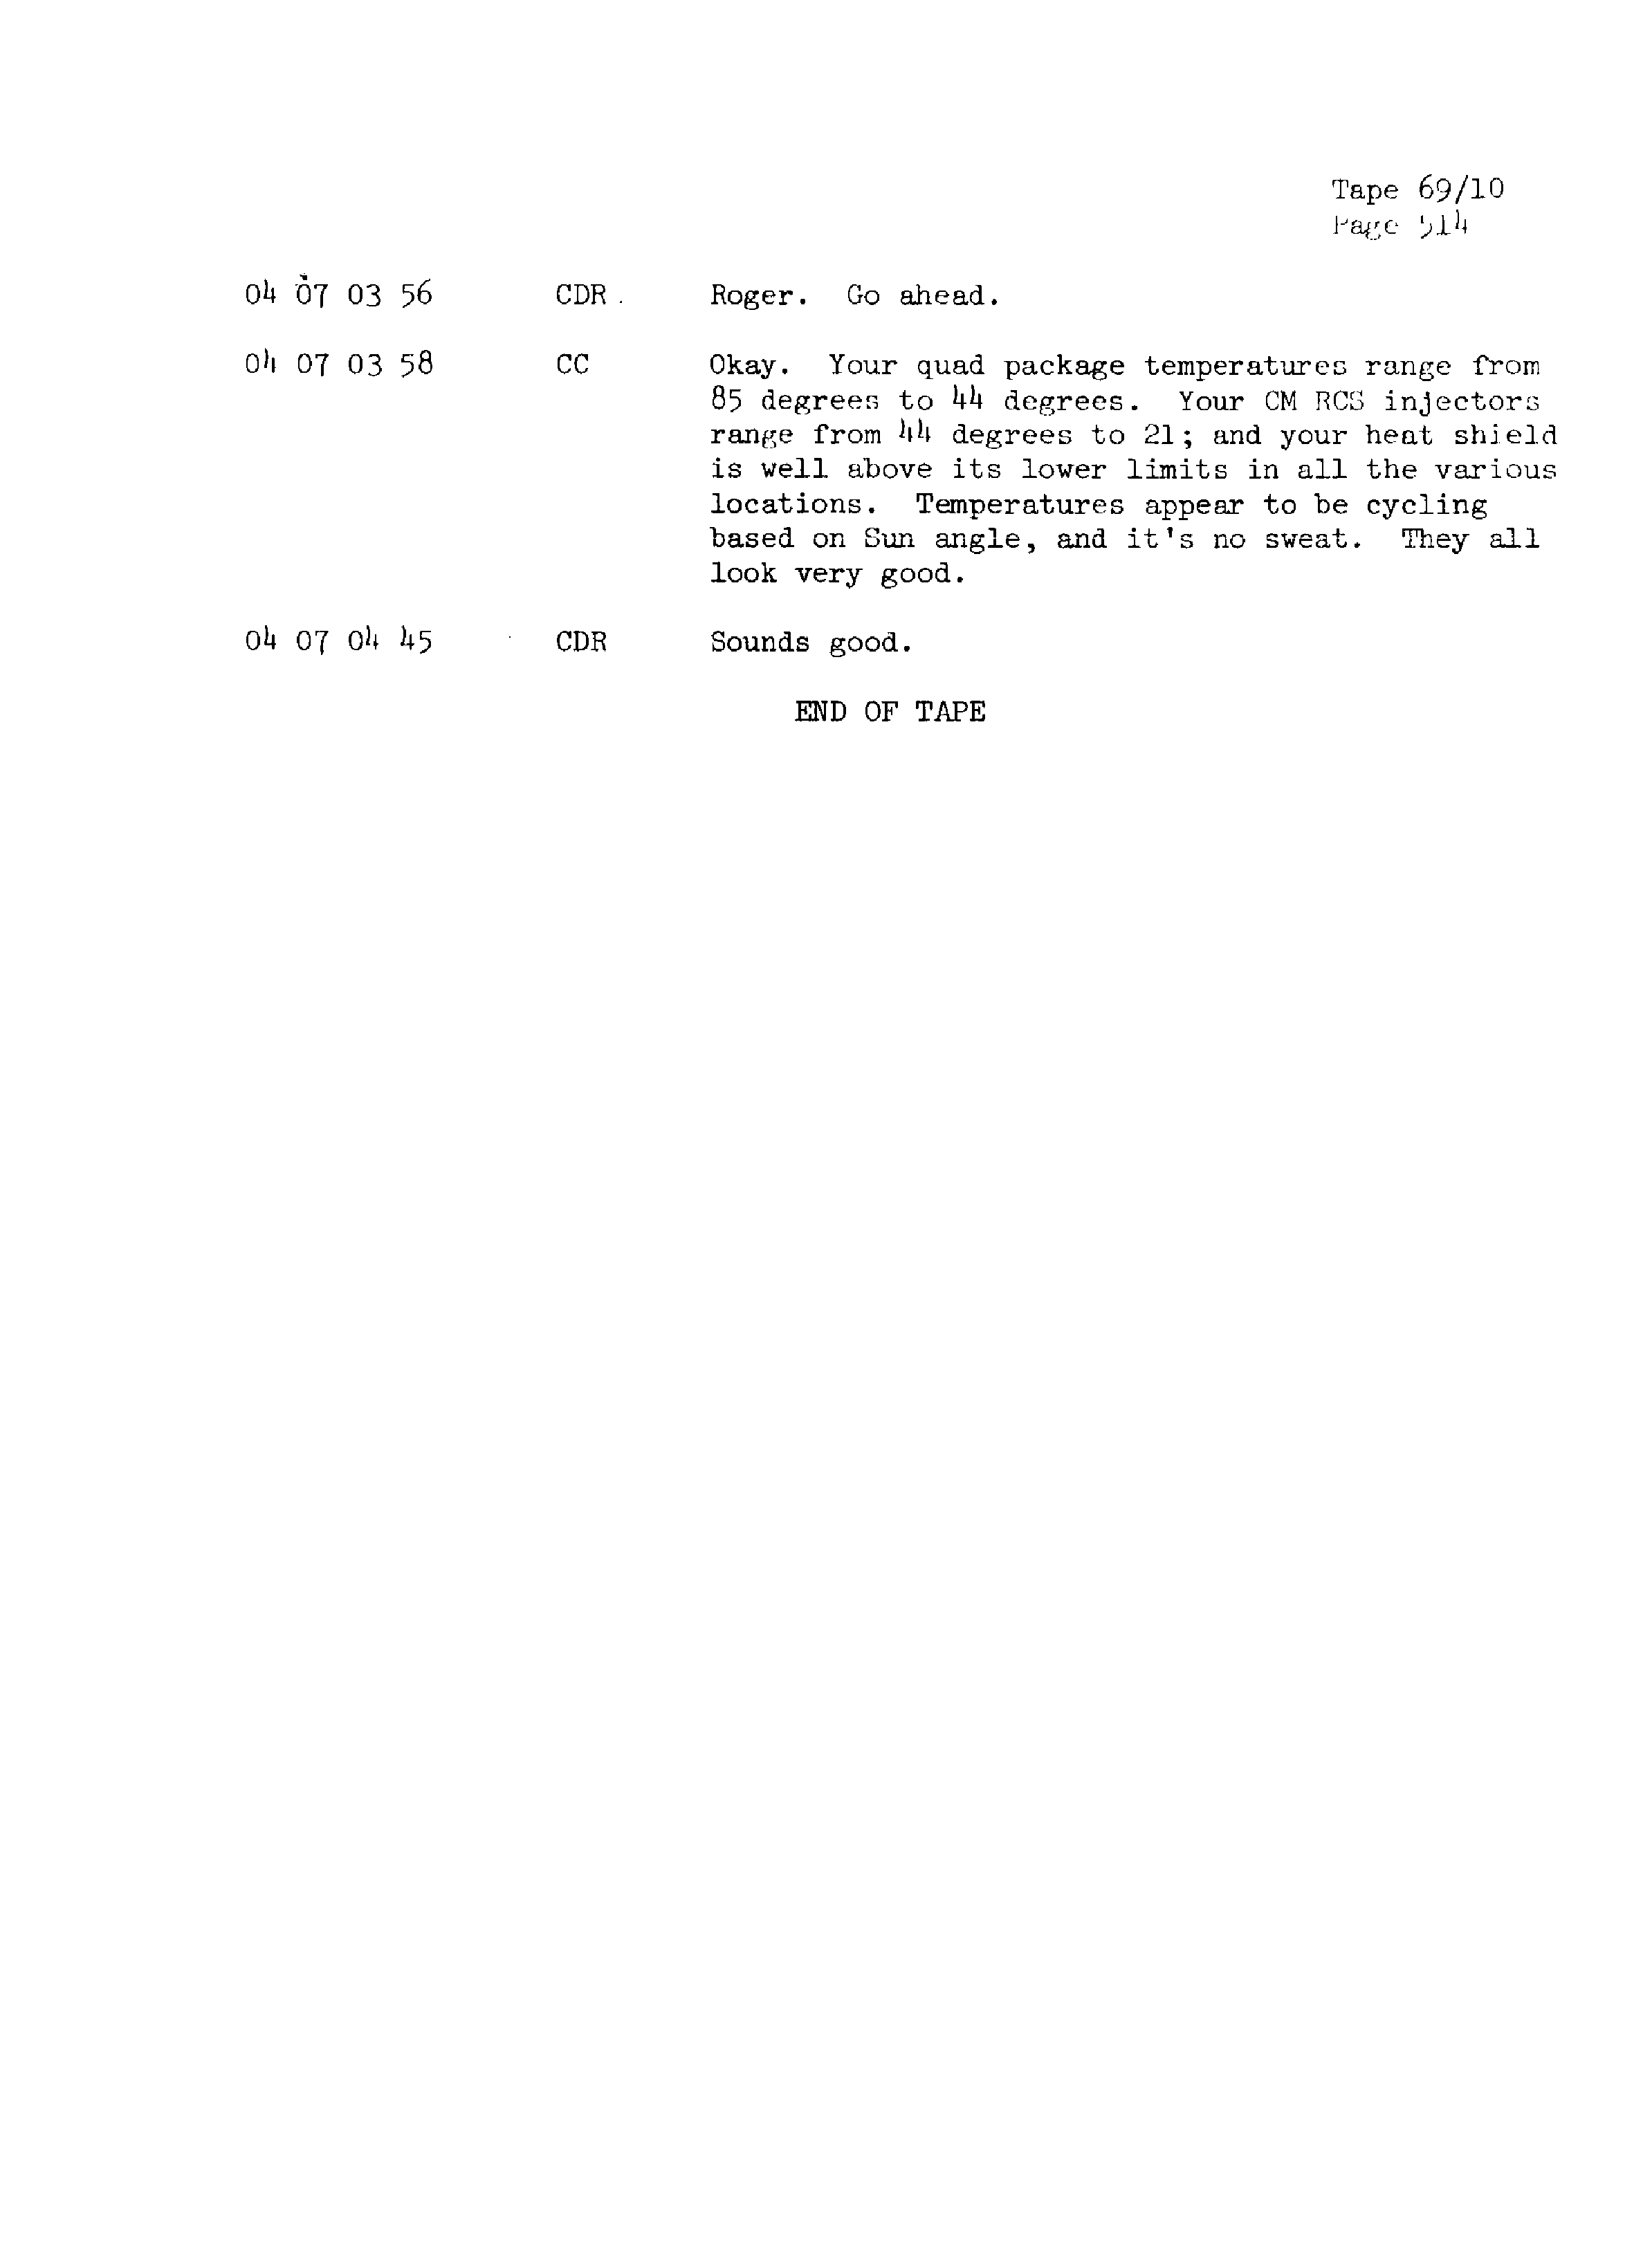 Page 521 of Apollo 13’s original transcript